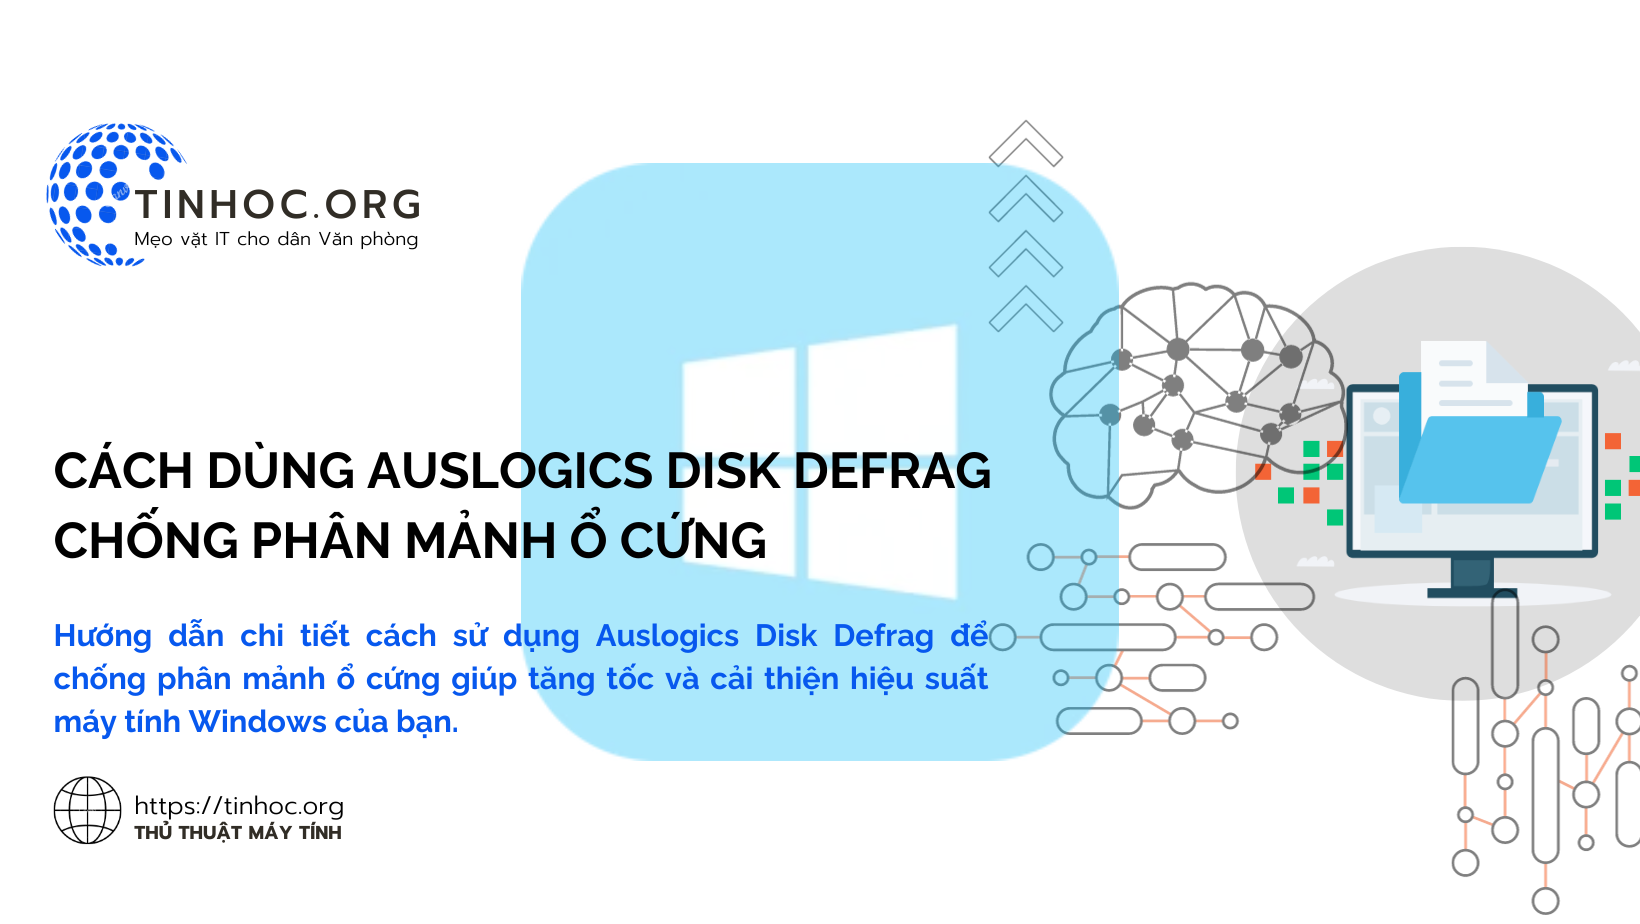 Hướng dẫn chi tiết cách sử dụng Auslogics Disk Defrag để chống phân mảnh ổ cứng giúp tăng tốc và cải thiện hiệu suất máy tính Windows của bạn.